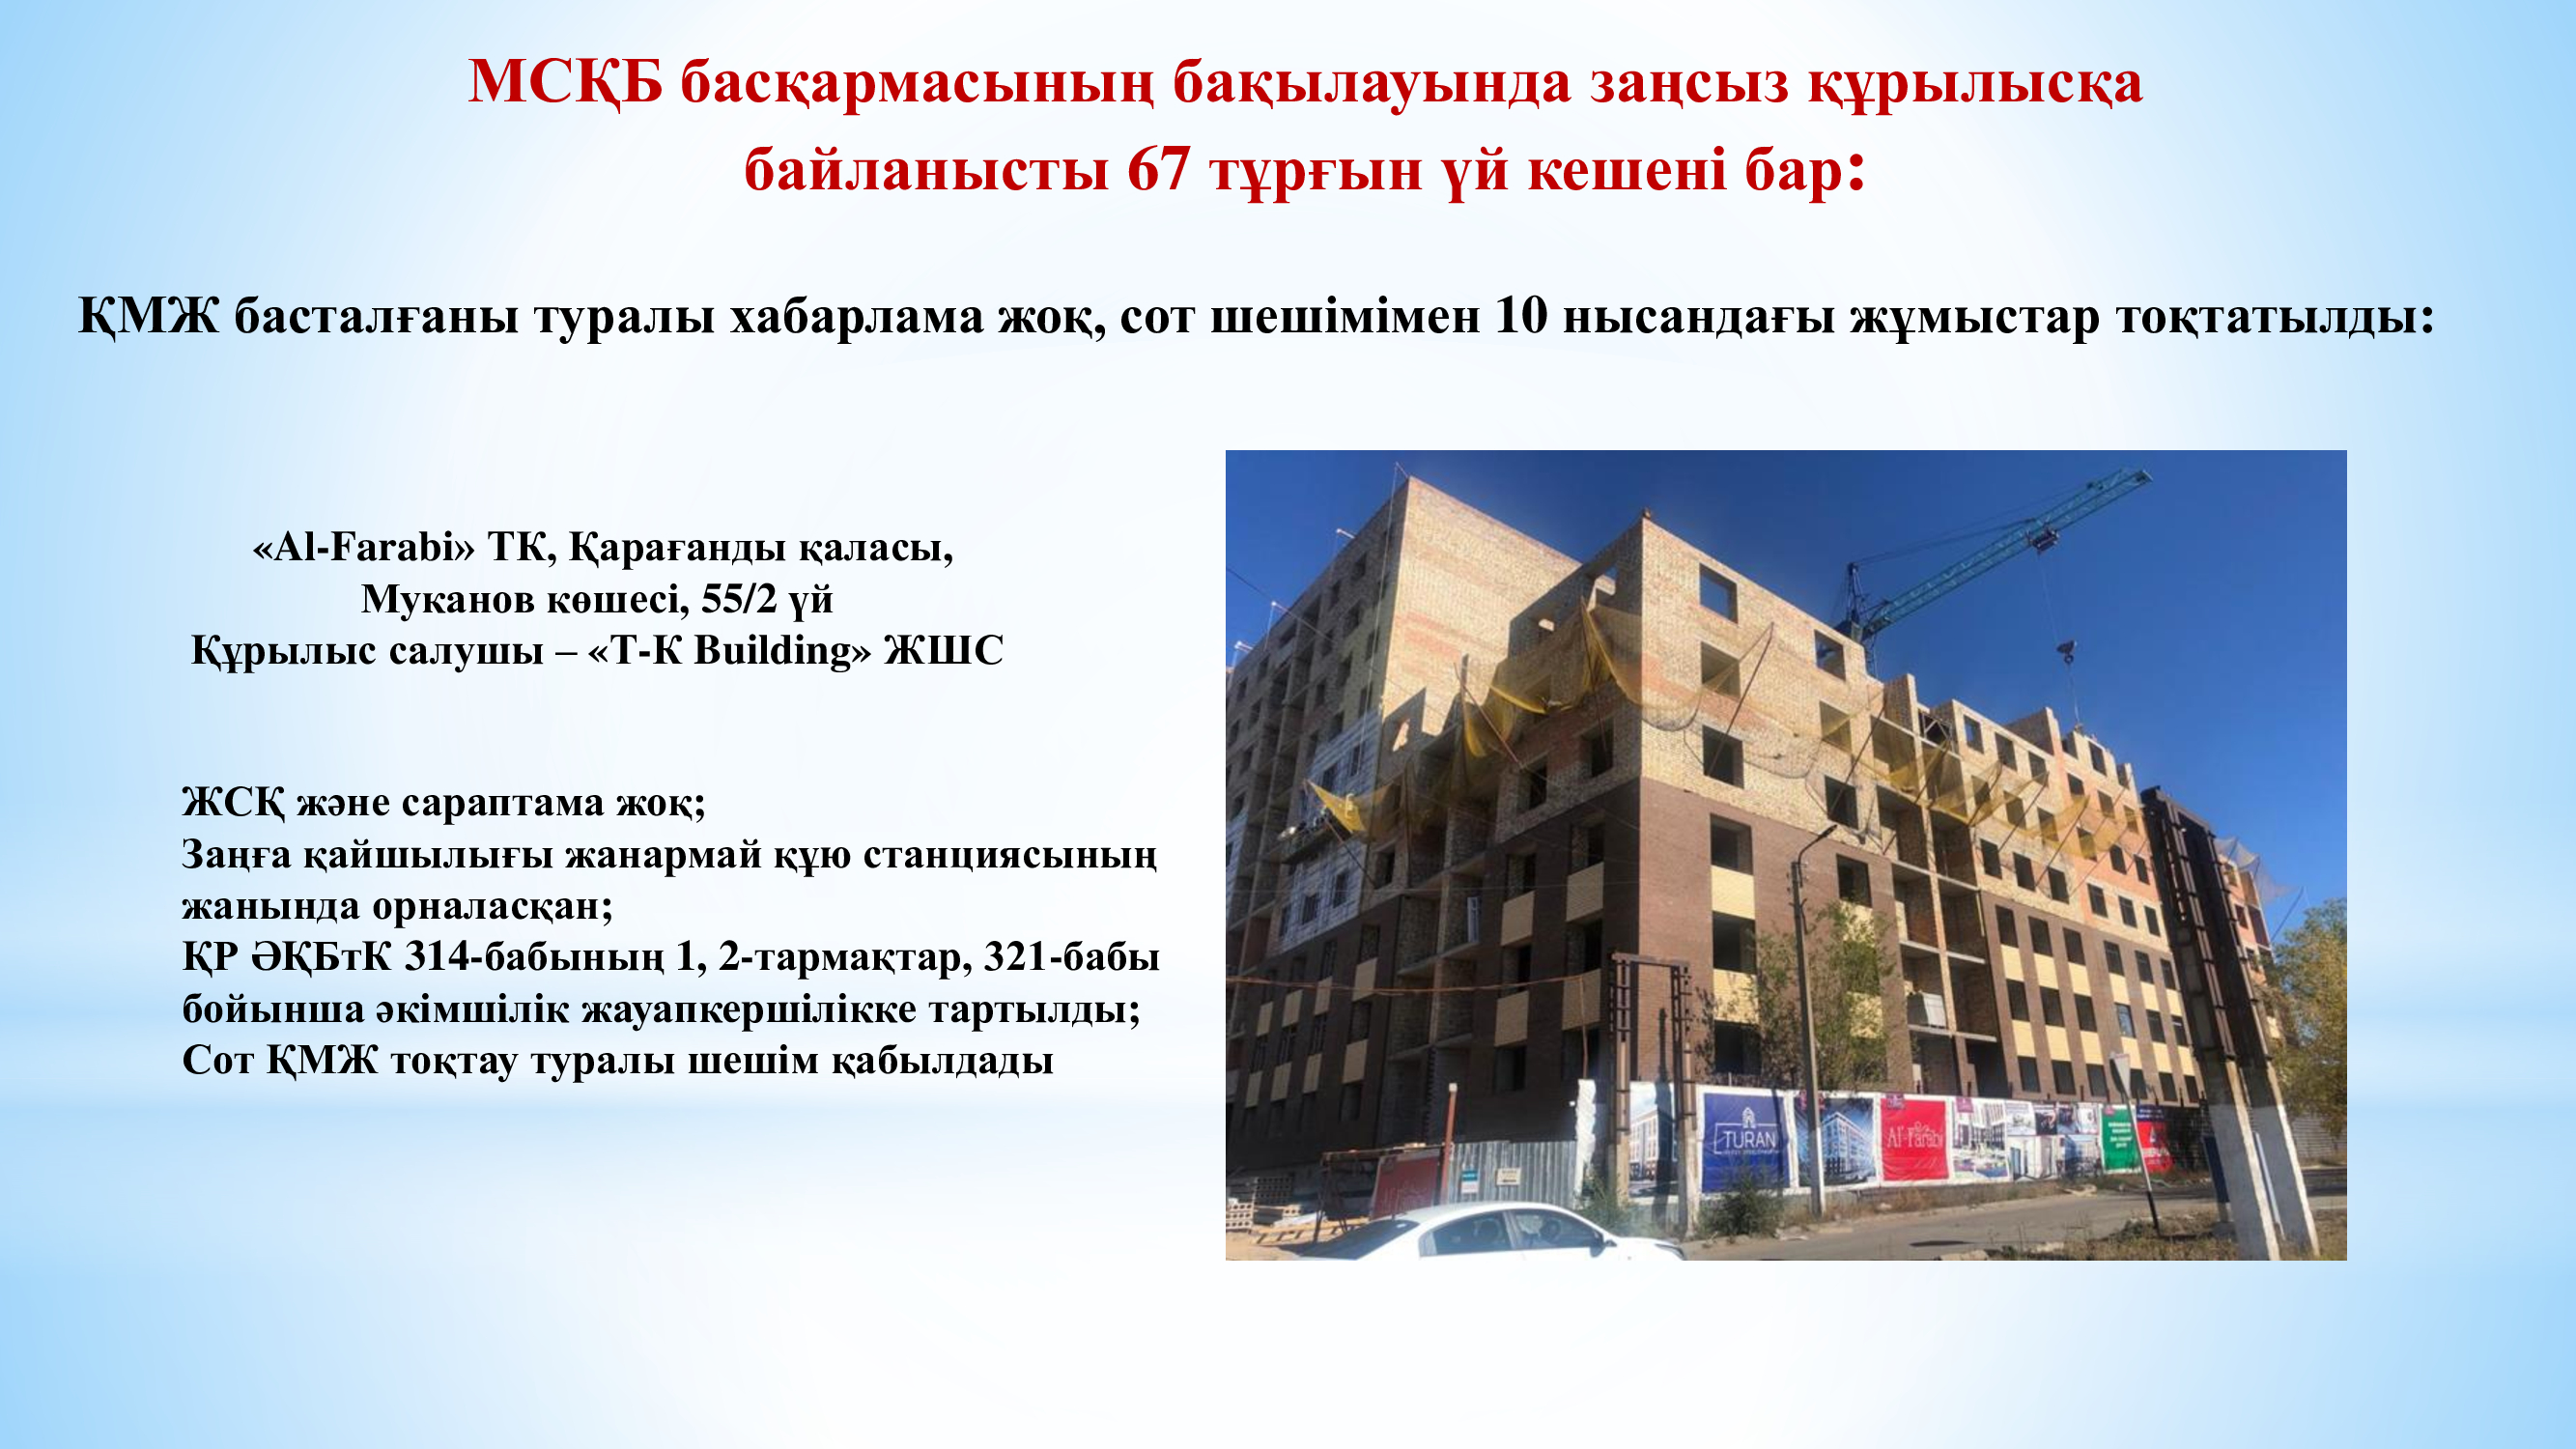 Қарағанды облысының ГАСК басқармасының бақылауында заңсыз құрылысқа байланысты 67 тұрғын үй кешені бар